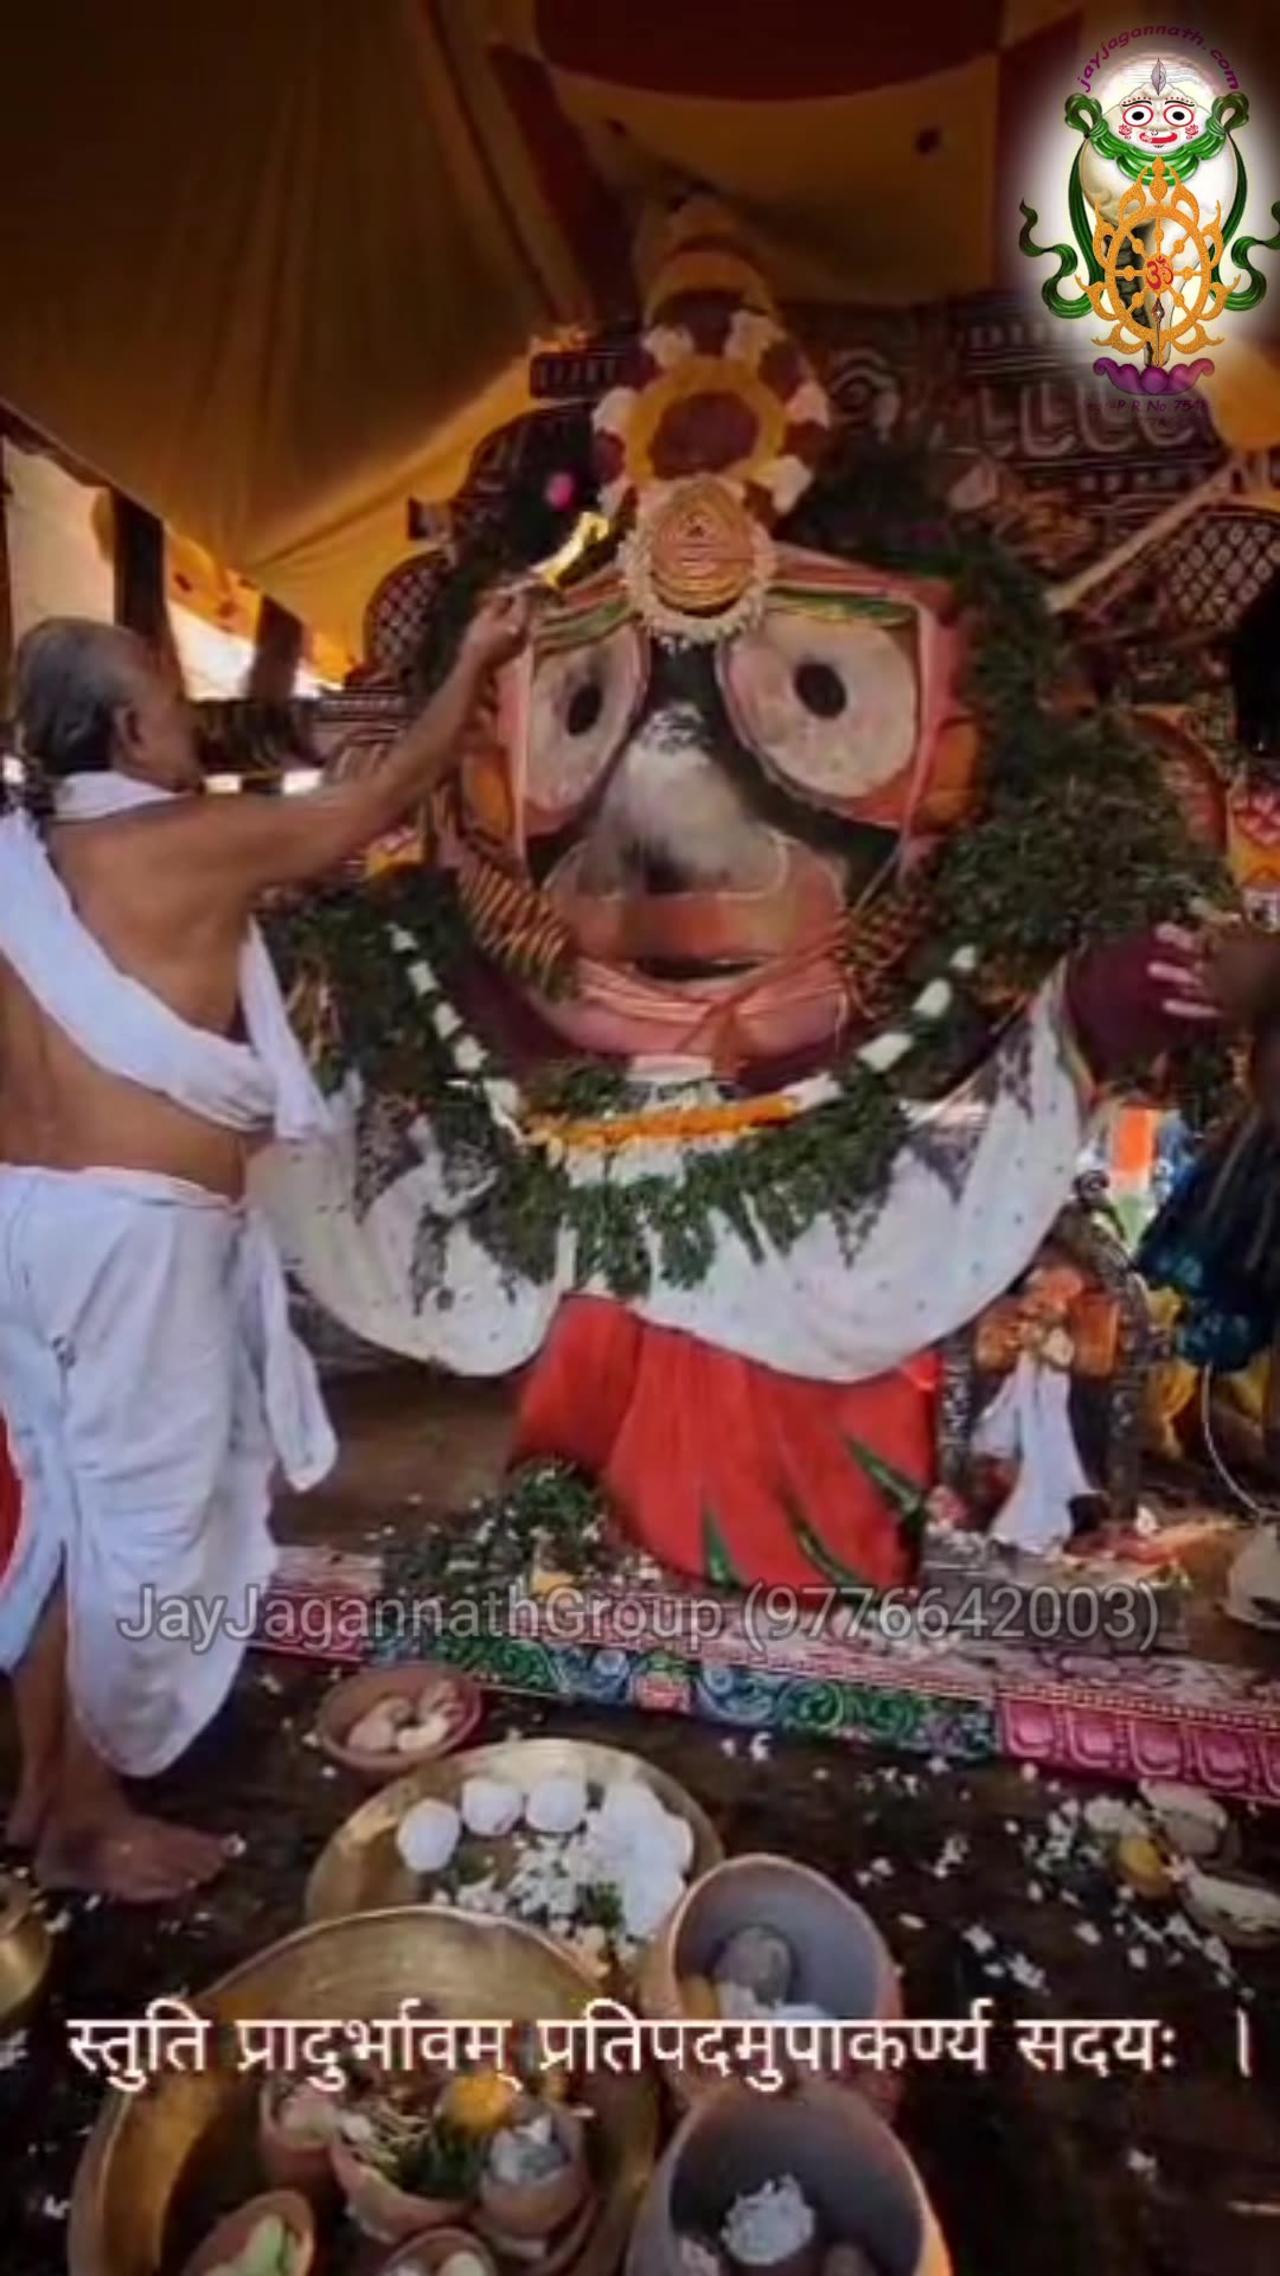 Wonderfull video of lord jagannath temple,puri